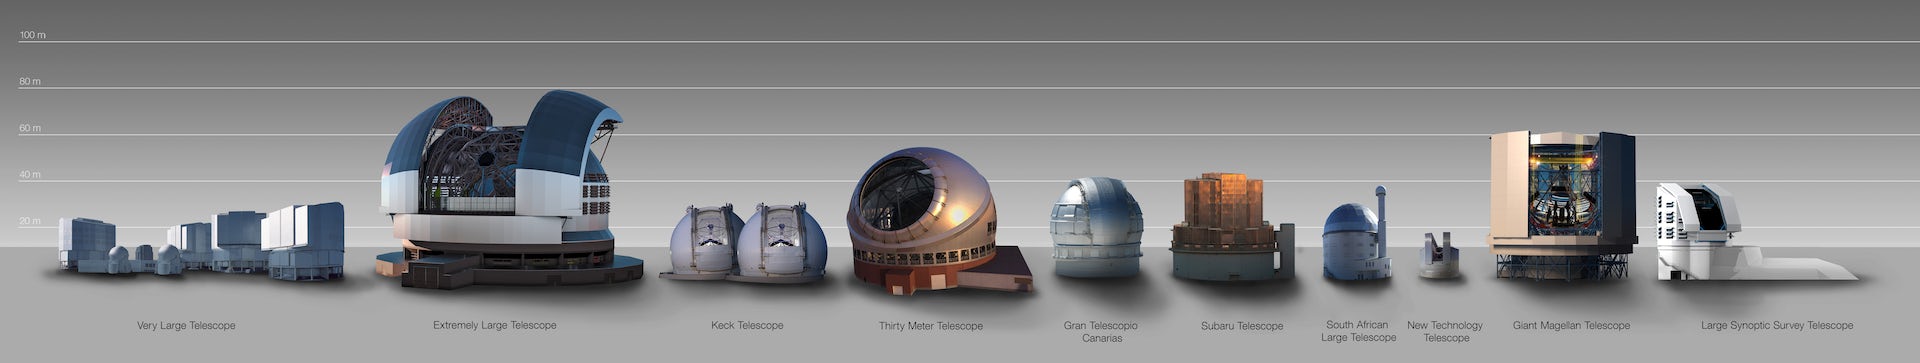 Perbandingan ukuran antara ELT dengan kubah teleskop lainnya.